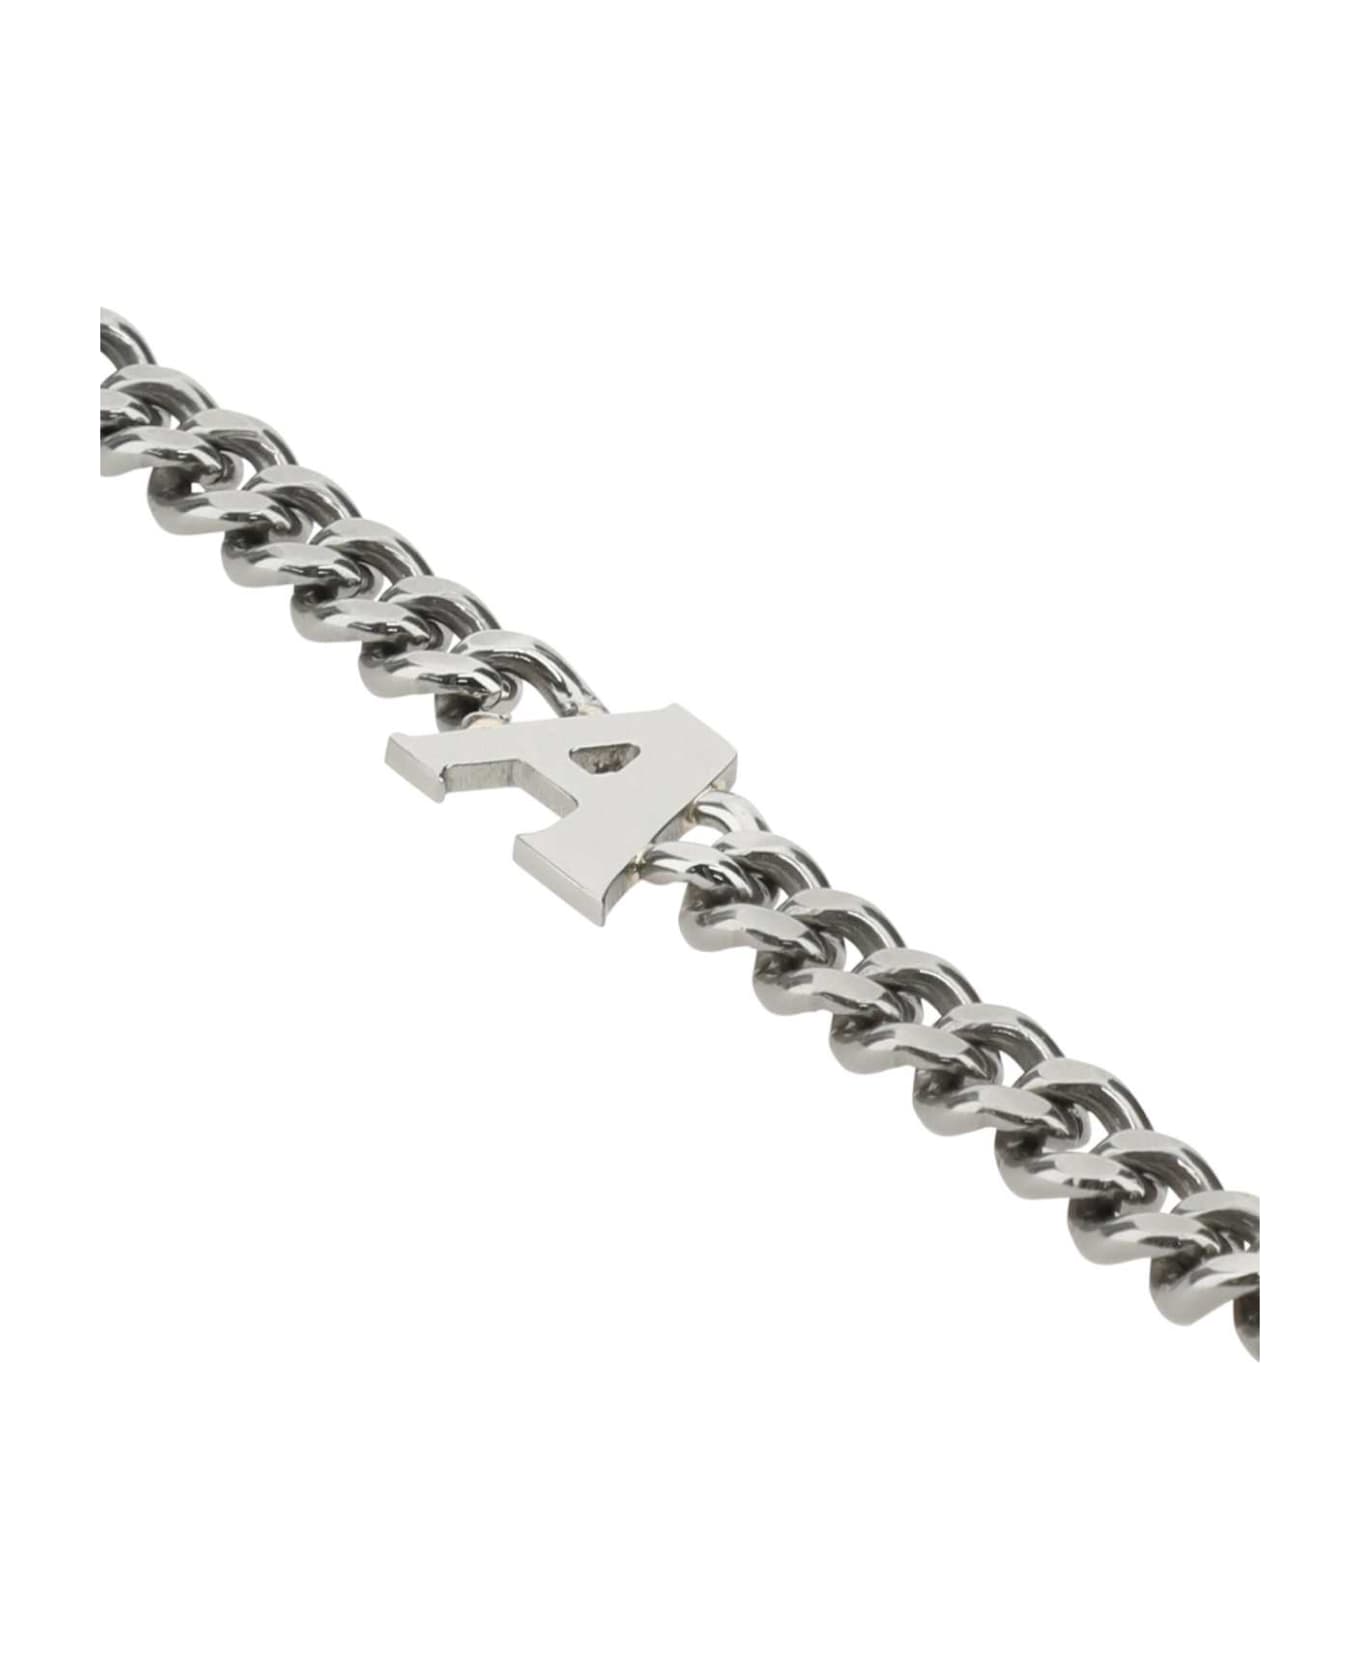 1017 ALYX 9SM Silver Metal Bracelet - GRY0002